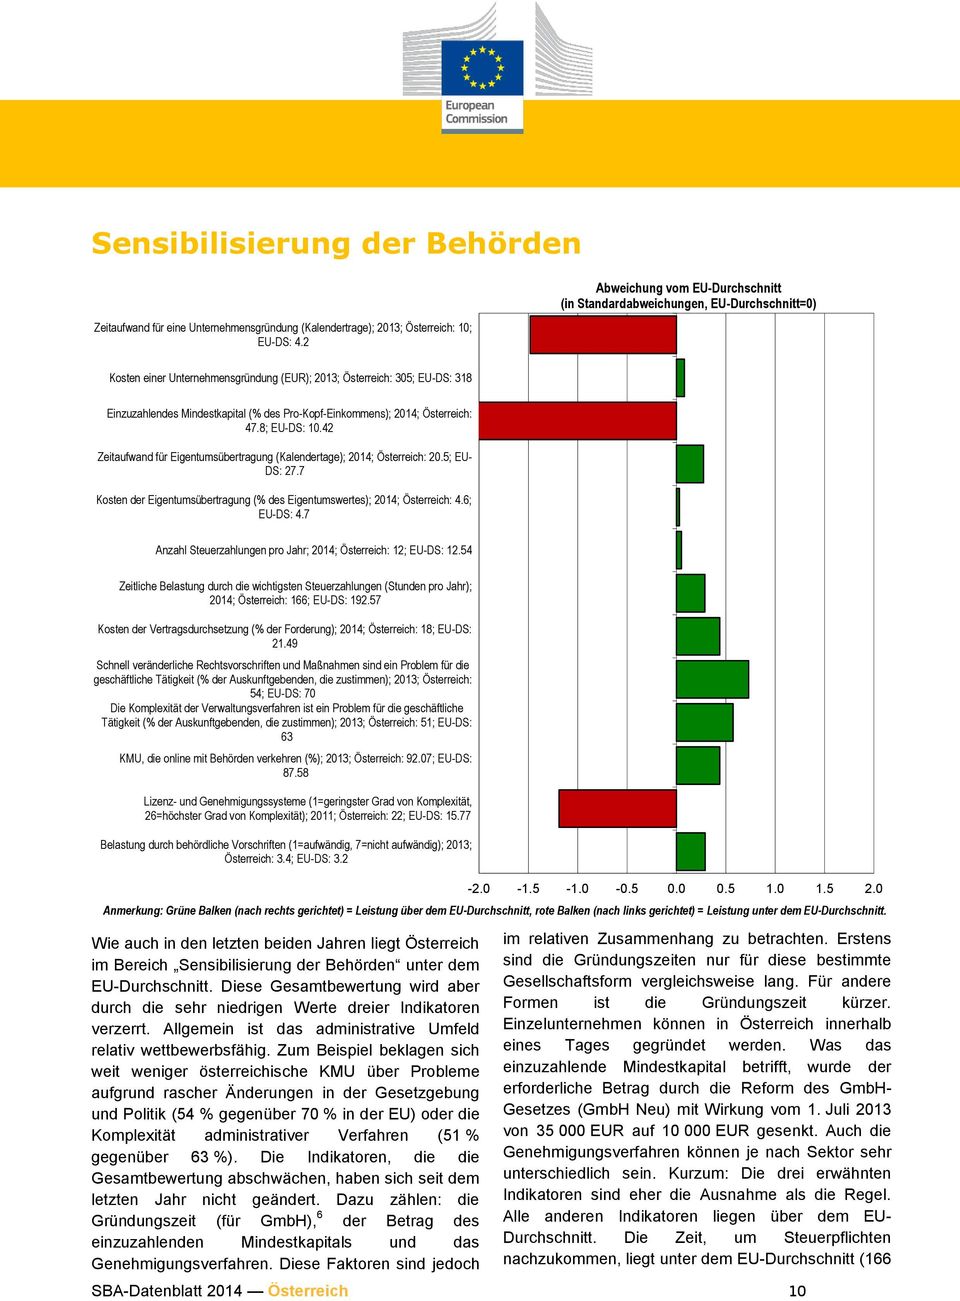 Pro-Kopf-Einkommens); 2014; Österreich: 47.8; EU-DS: 10.42 Zeitaufwand für Eigentumsübertragung (Kalendertage); 2014; Österreich: 20.5; EU- DS: 27.